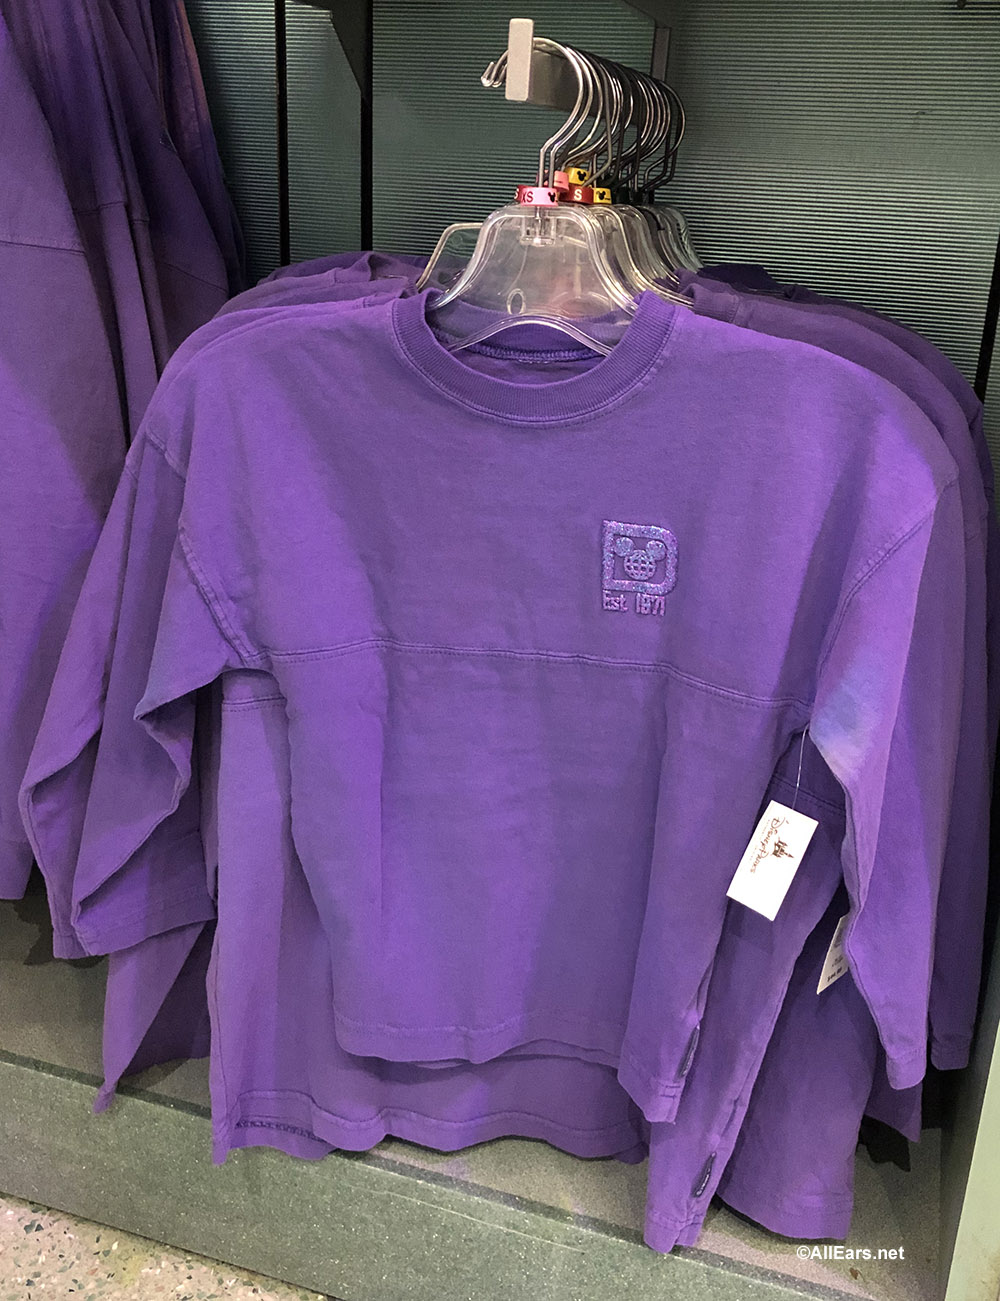 disneyland purple spirit jersey